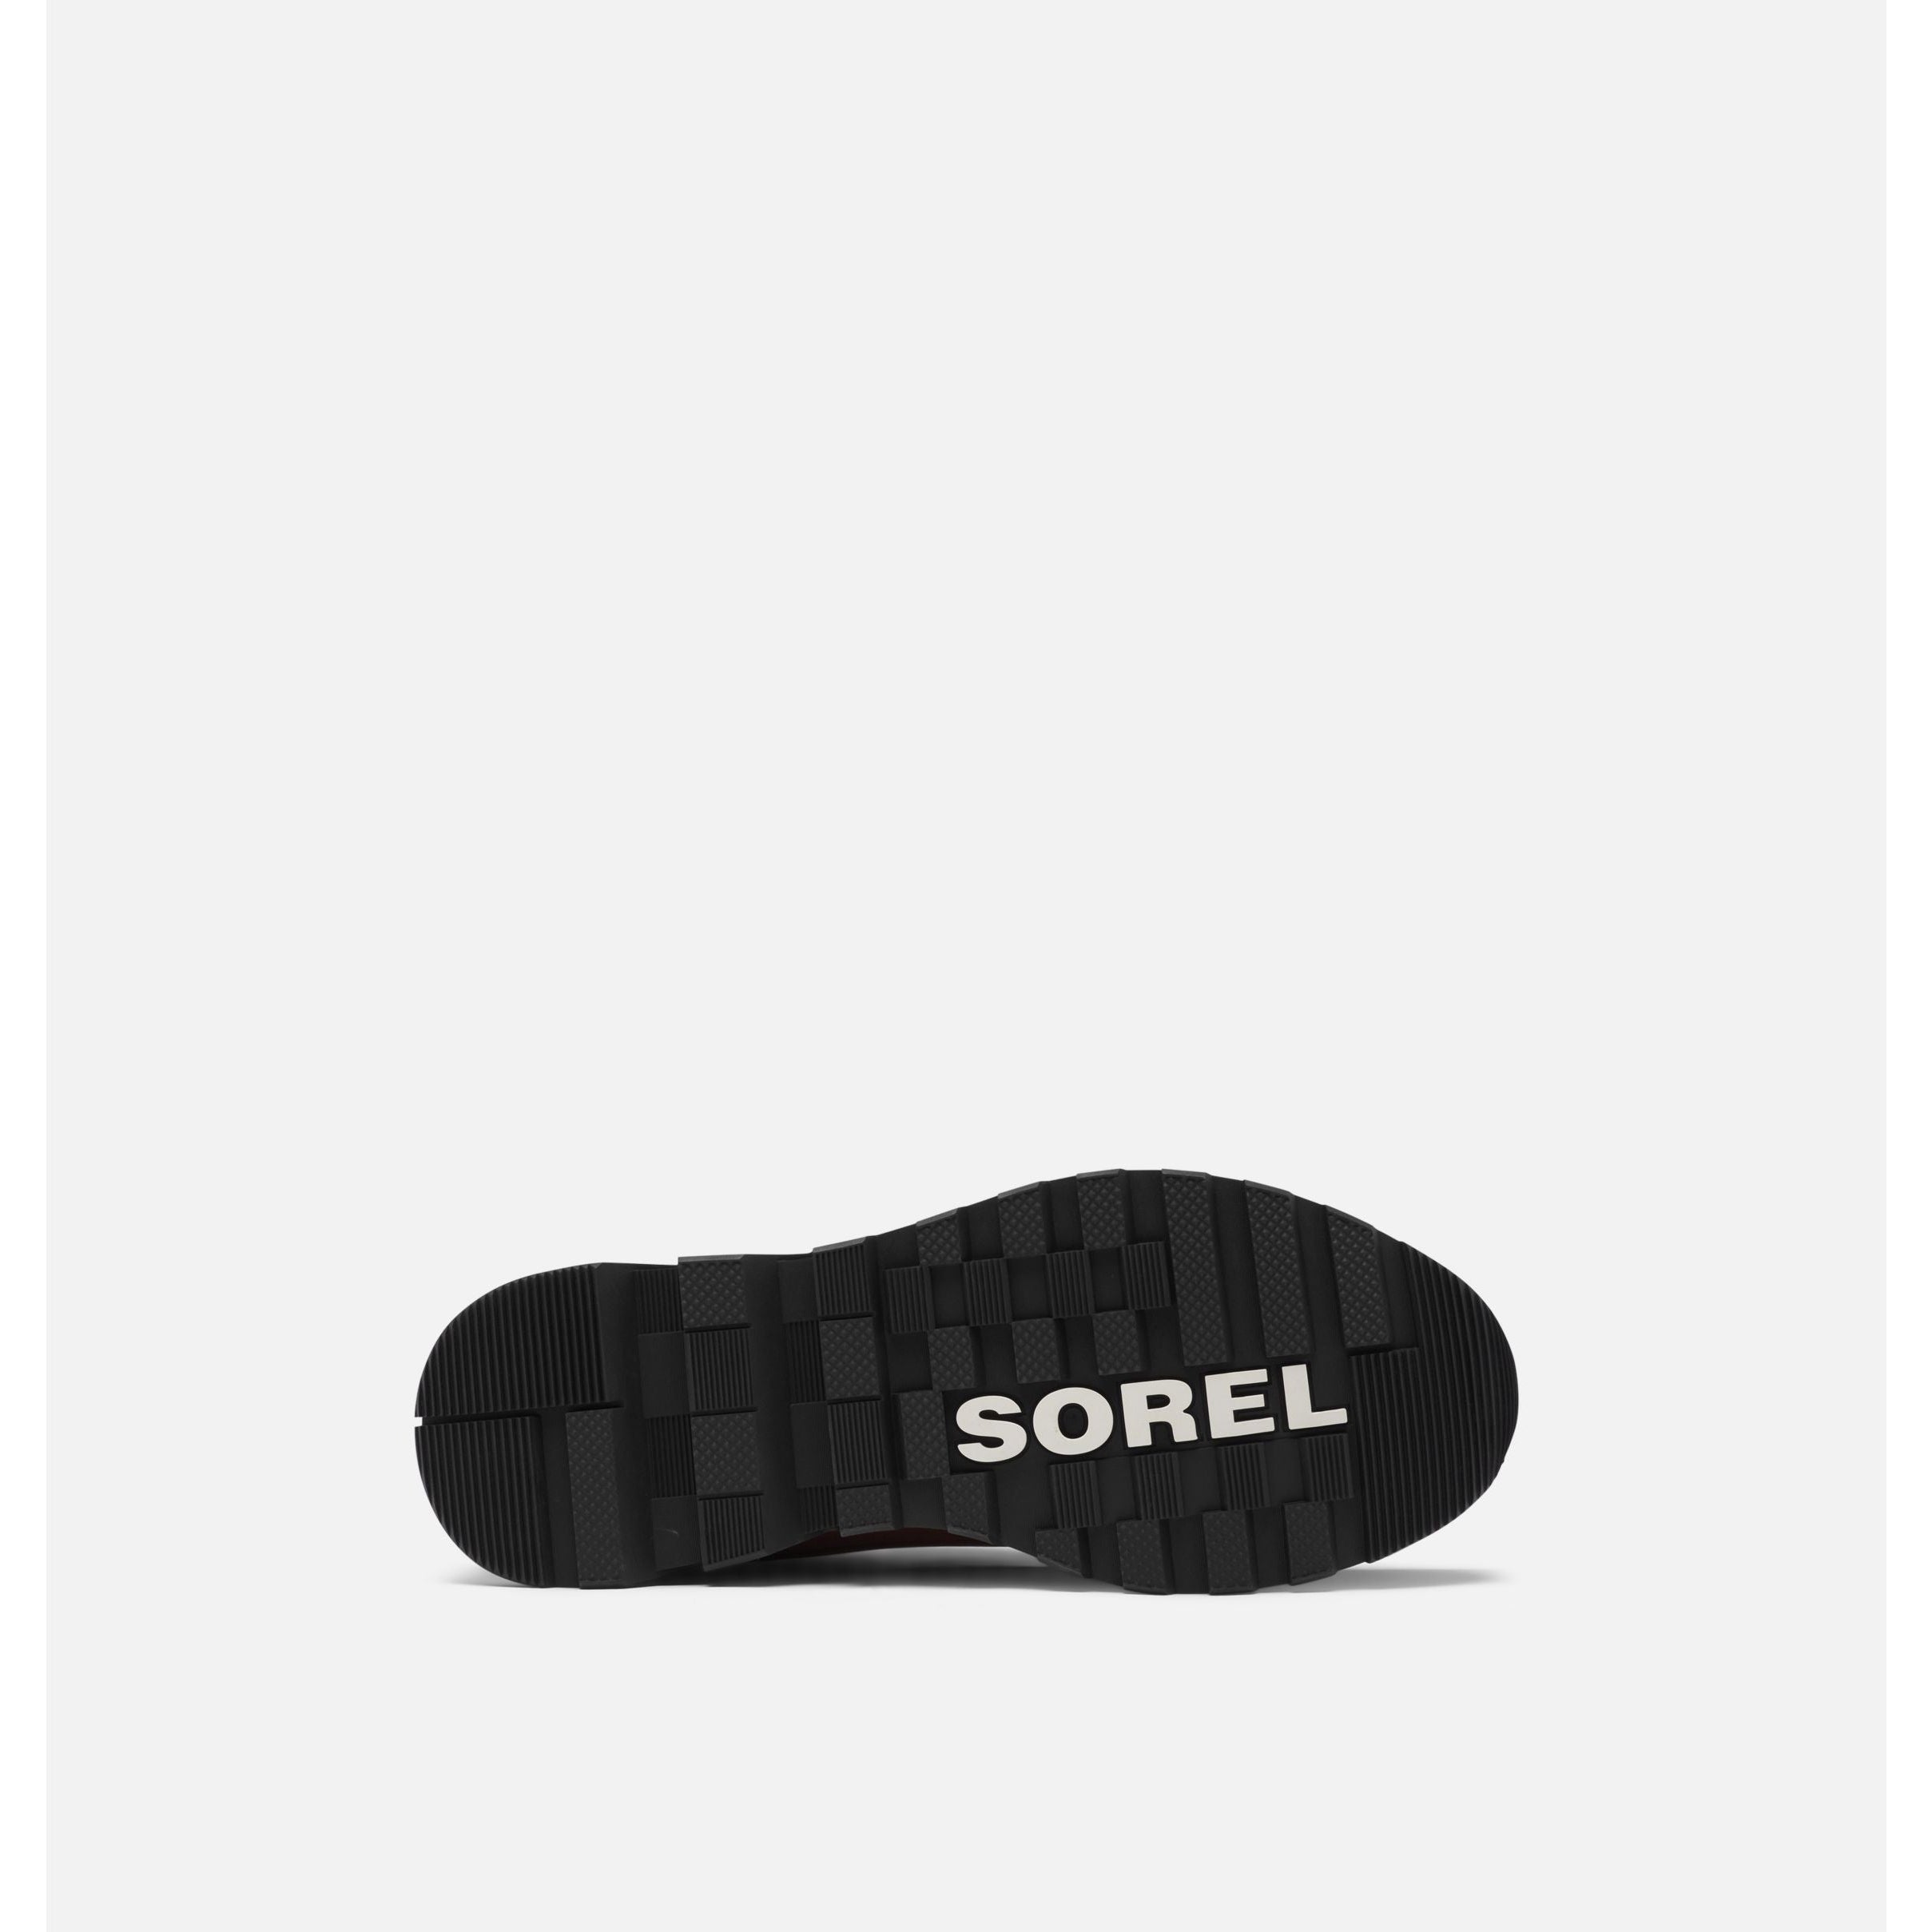 Sorel Men's Mac Hill LTR Water Proof Shoes